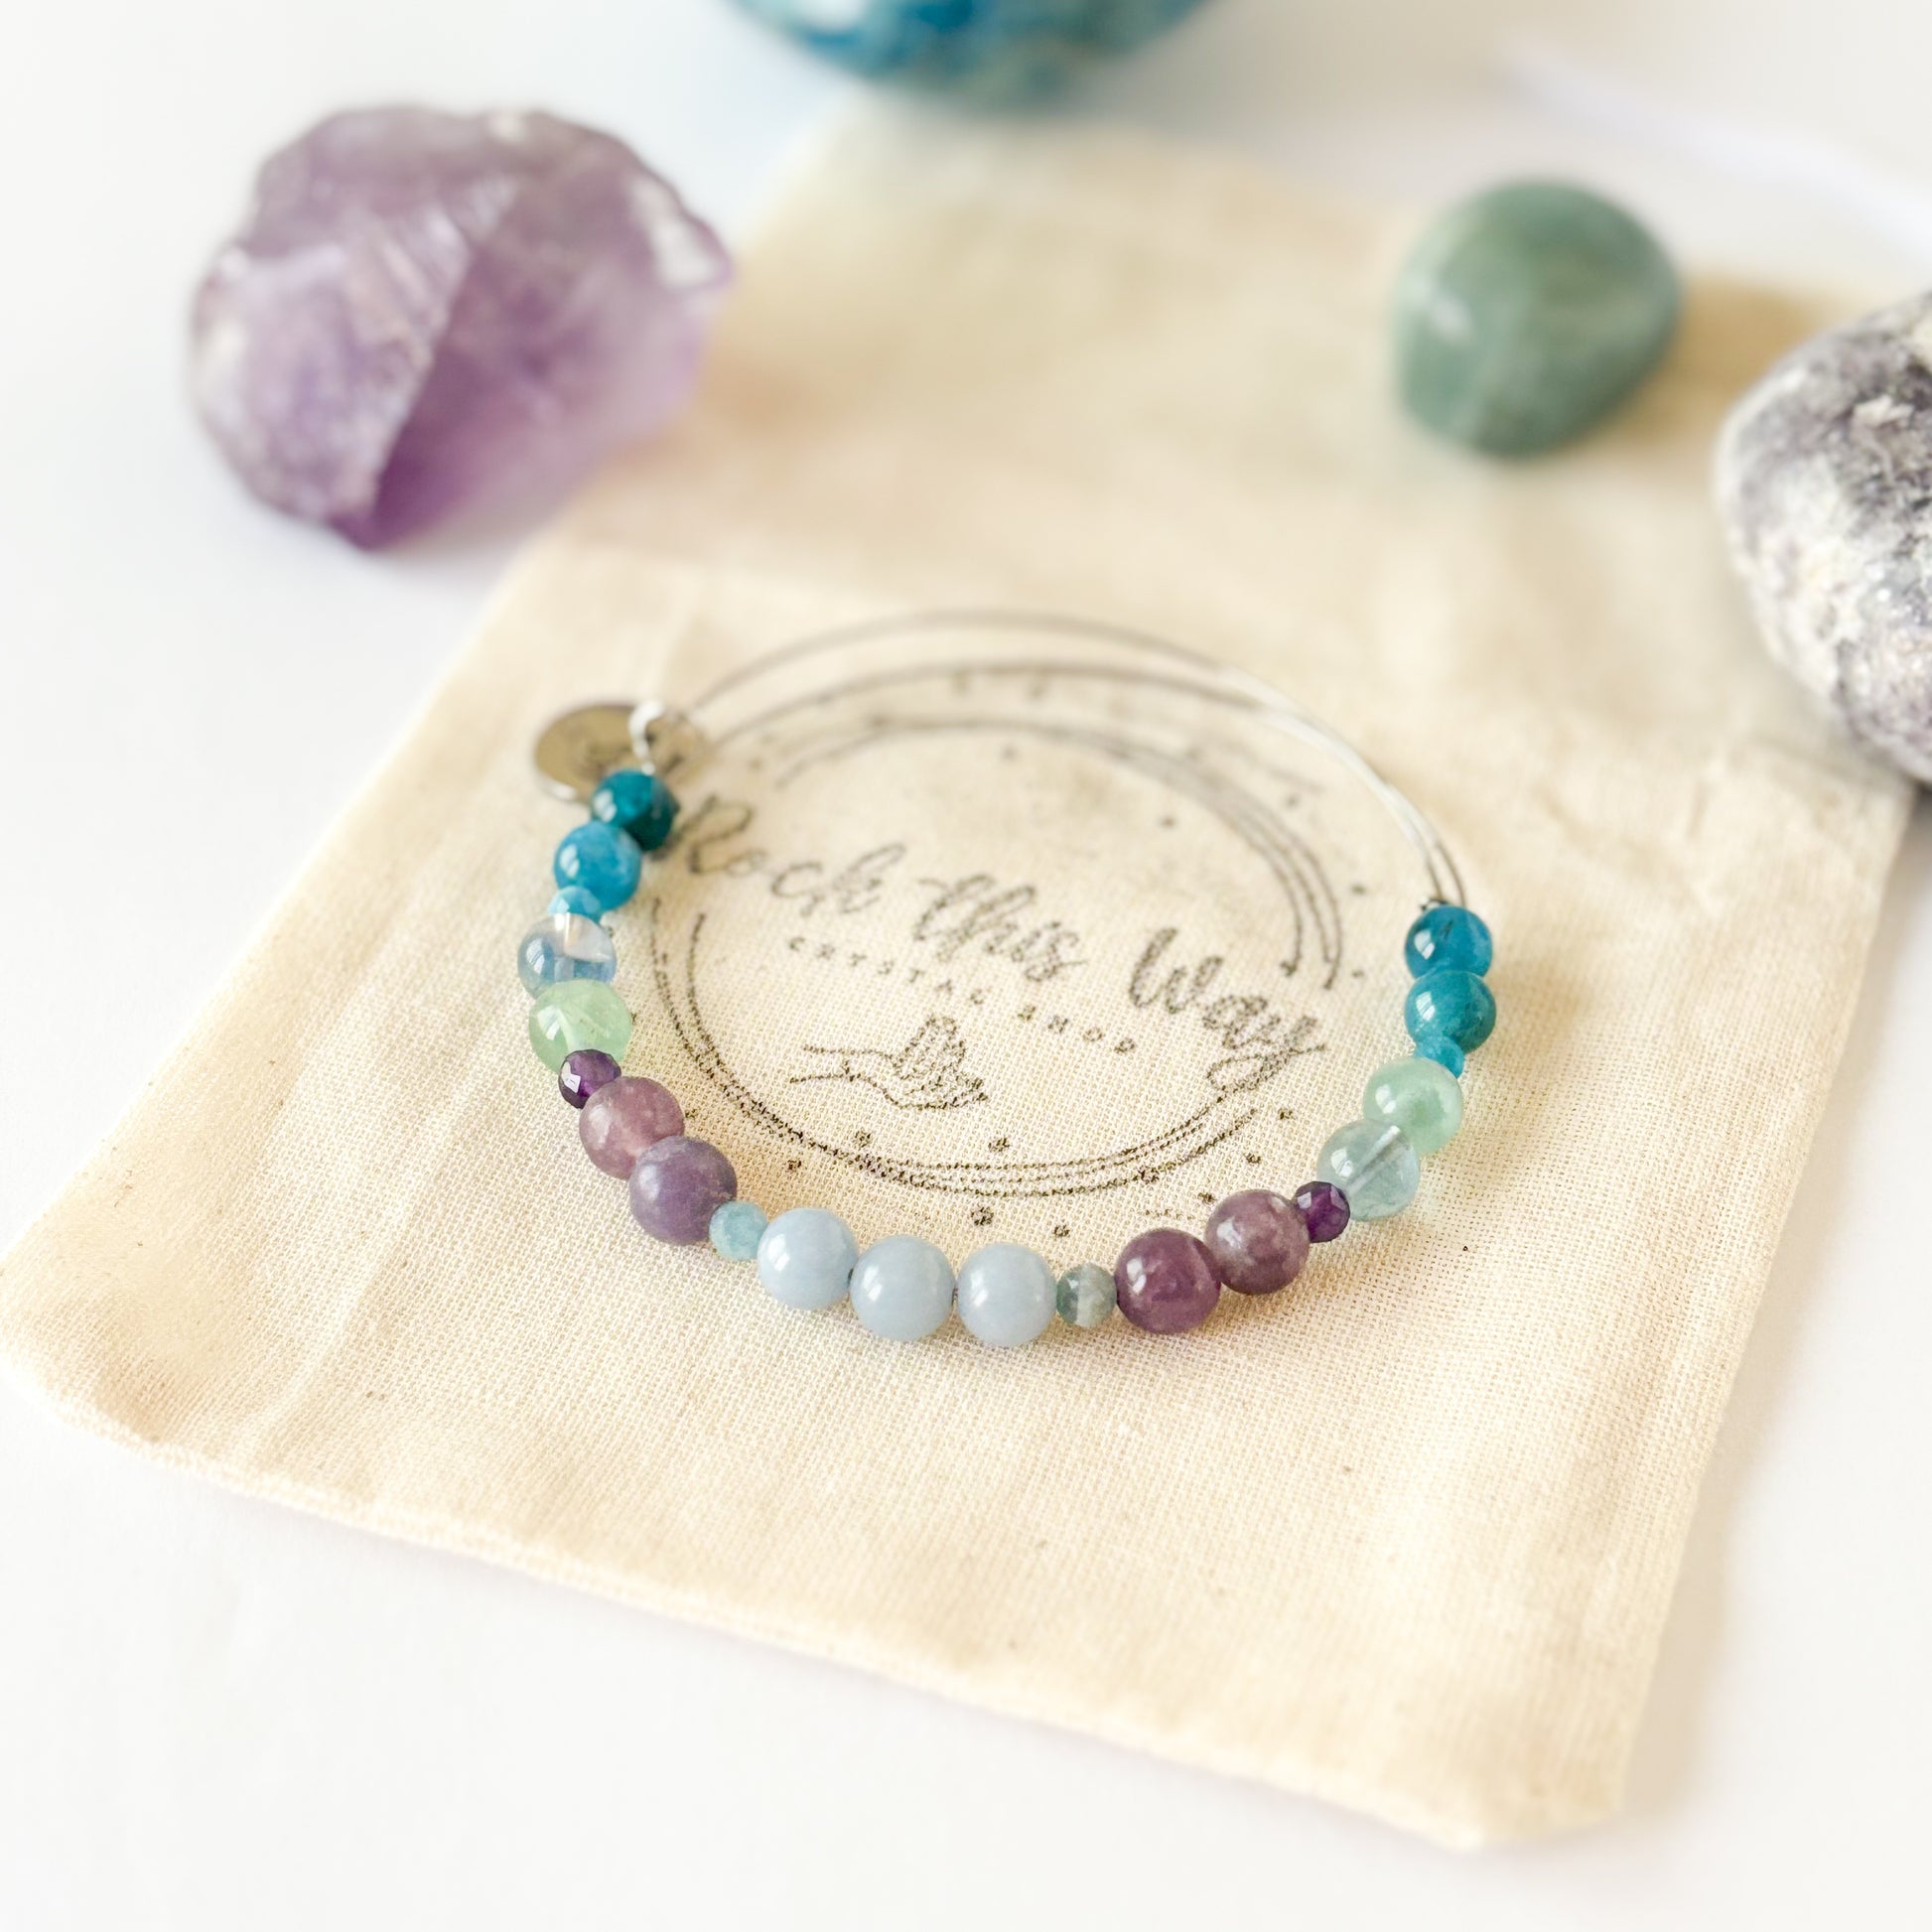 Aquamarine and Lepidolite tranquility bracelet